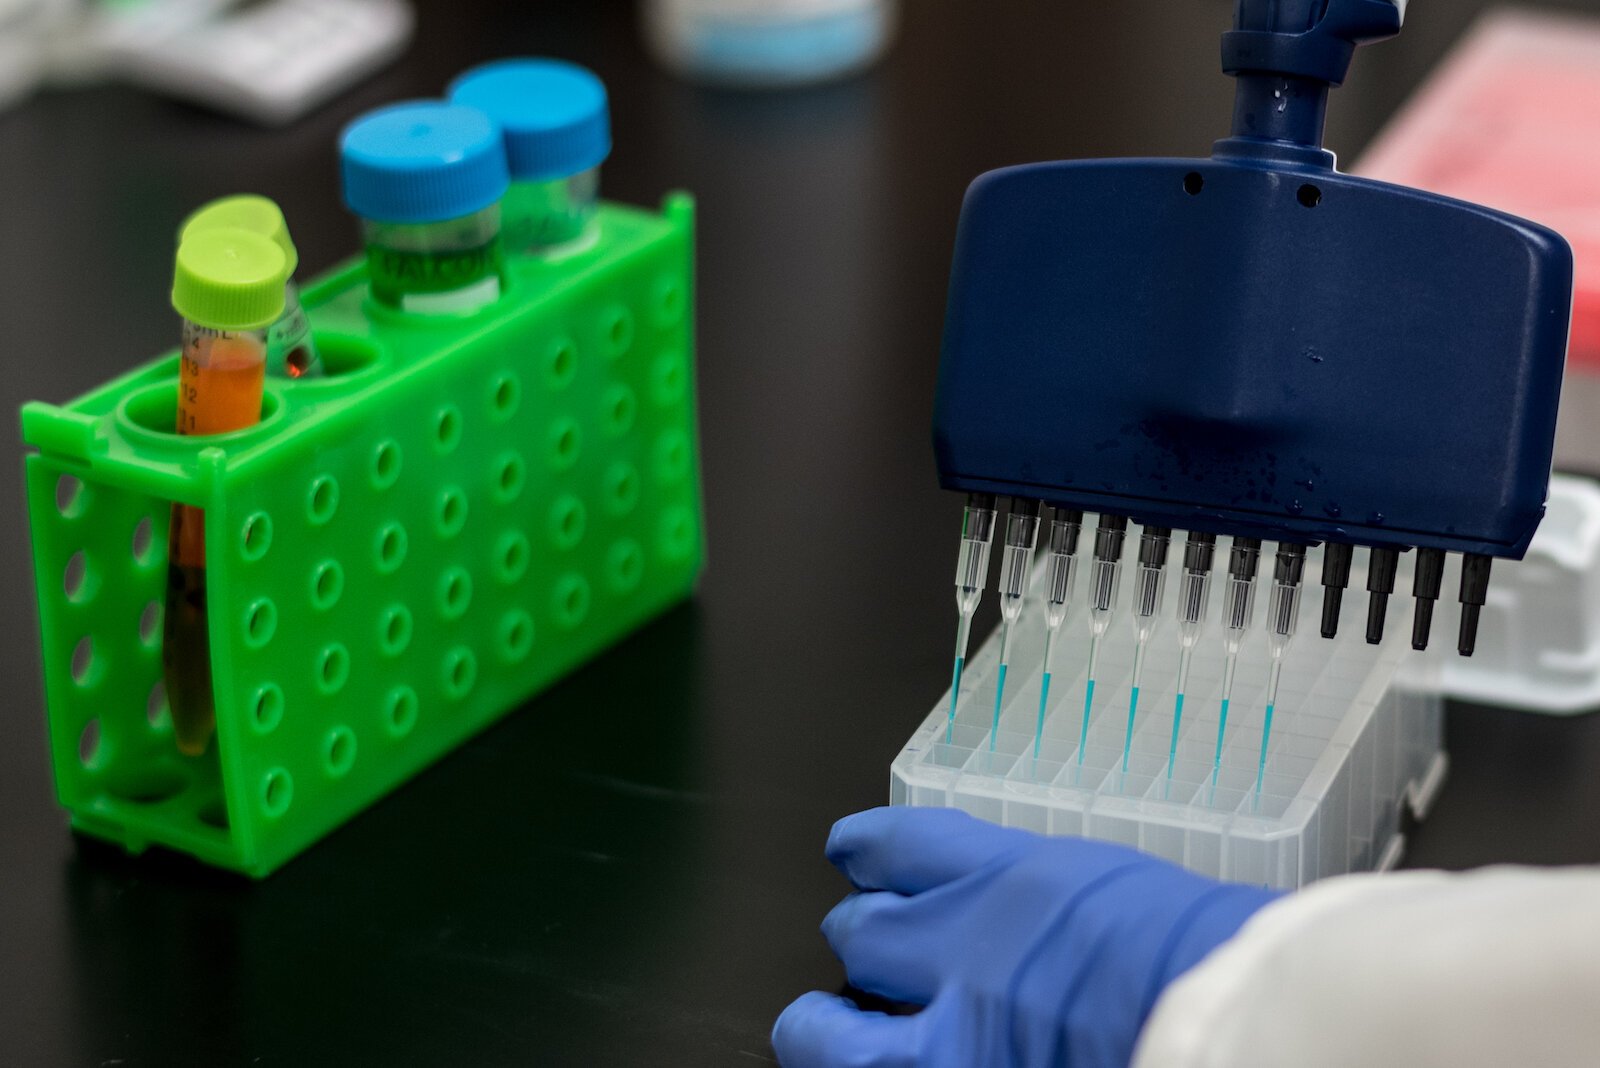 Alyson Rembowicz, técnico superior de laboratorio en Genemarkers, demuestra cómo los científicos tratan las muestras de ADN con un agente de prueba para ayudarles a identificar segmentos específicos de ADN.